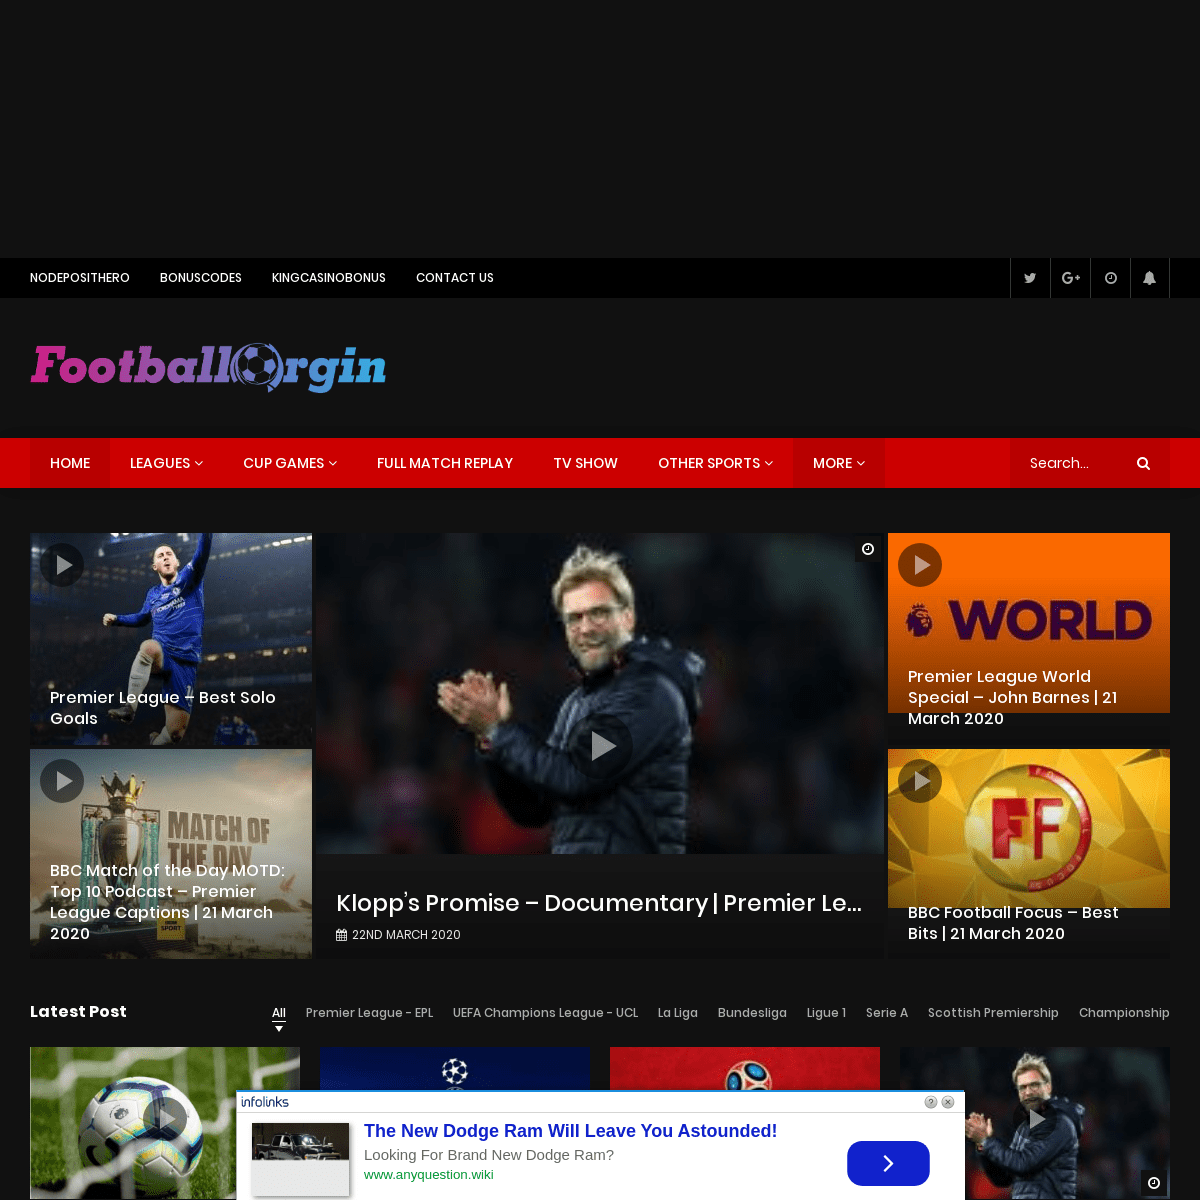 A complete backup of footballorgin.com